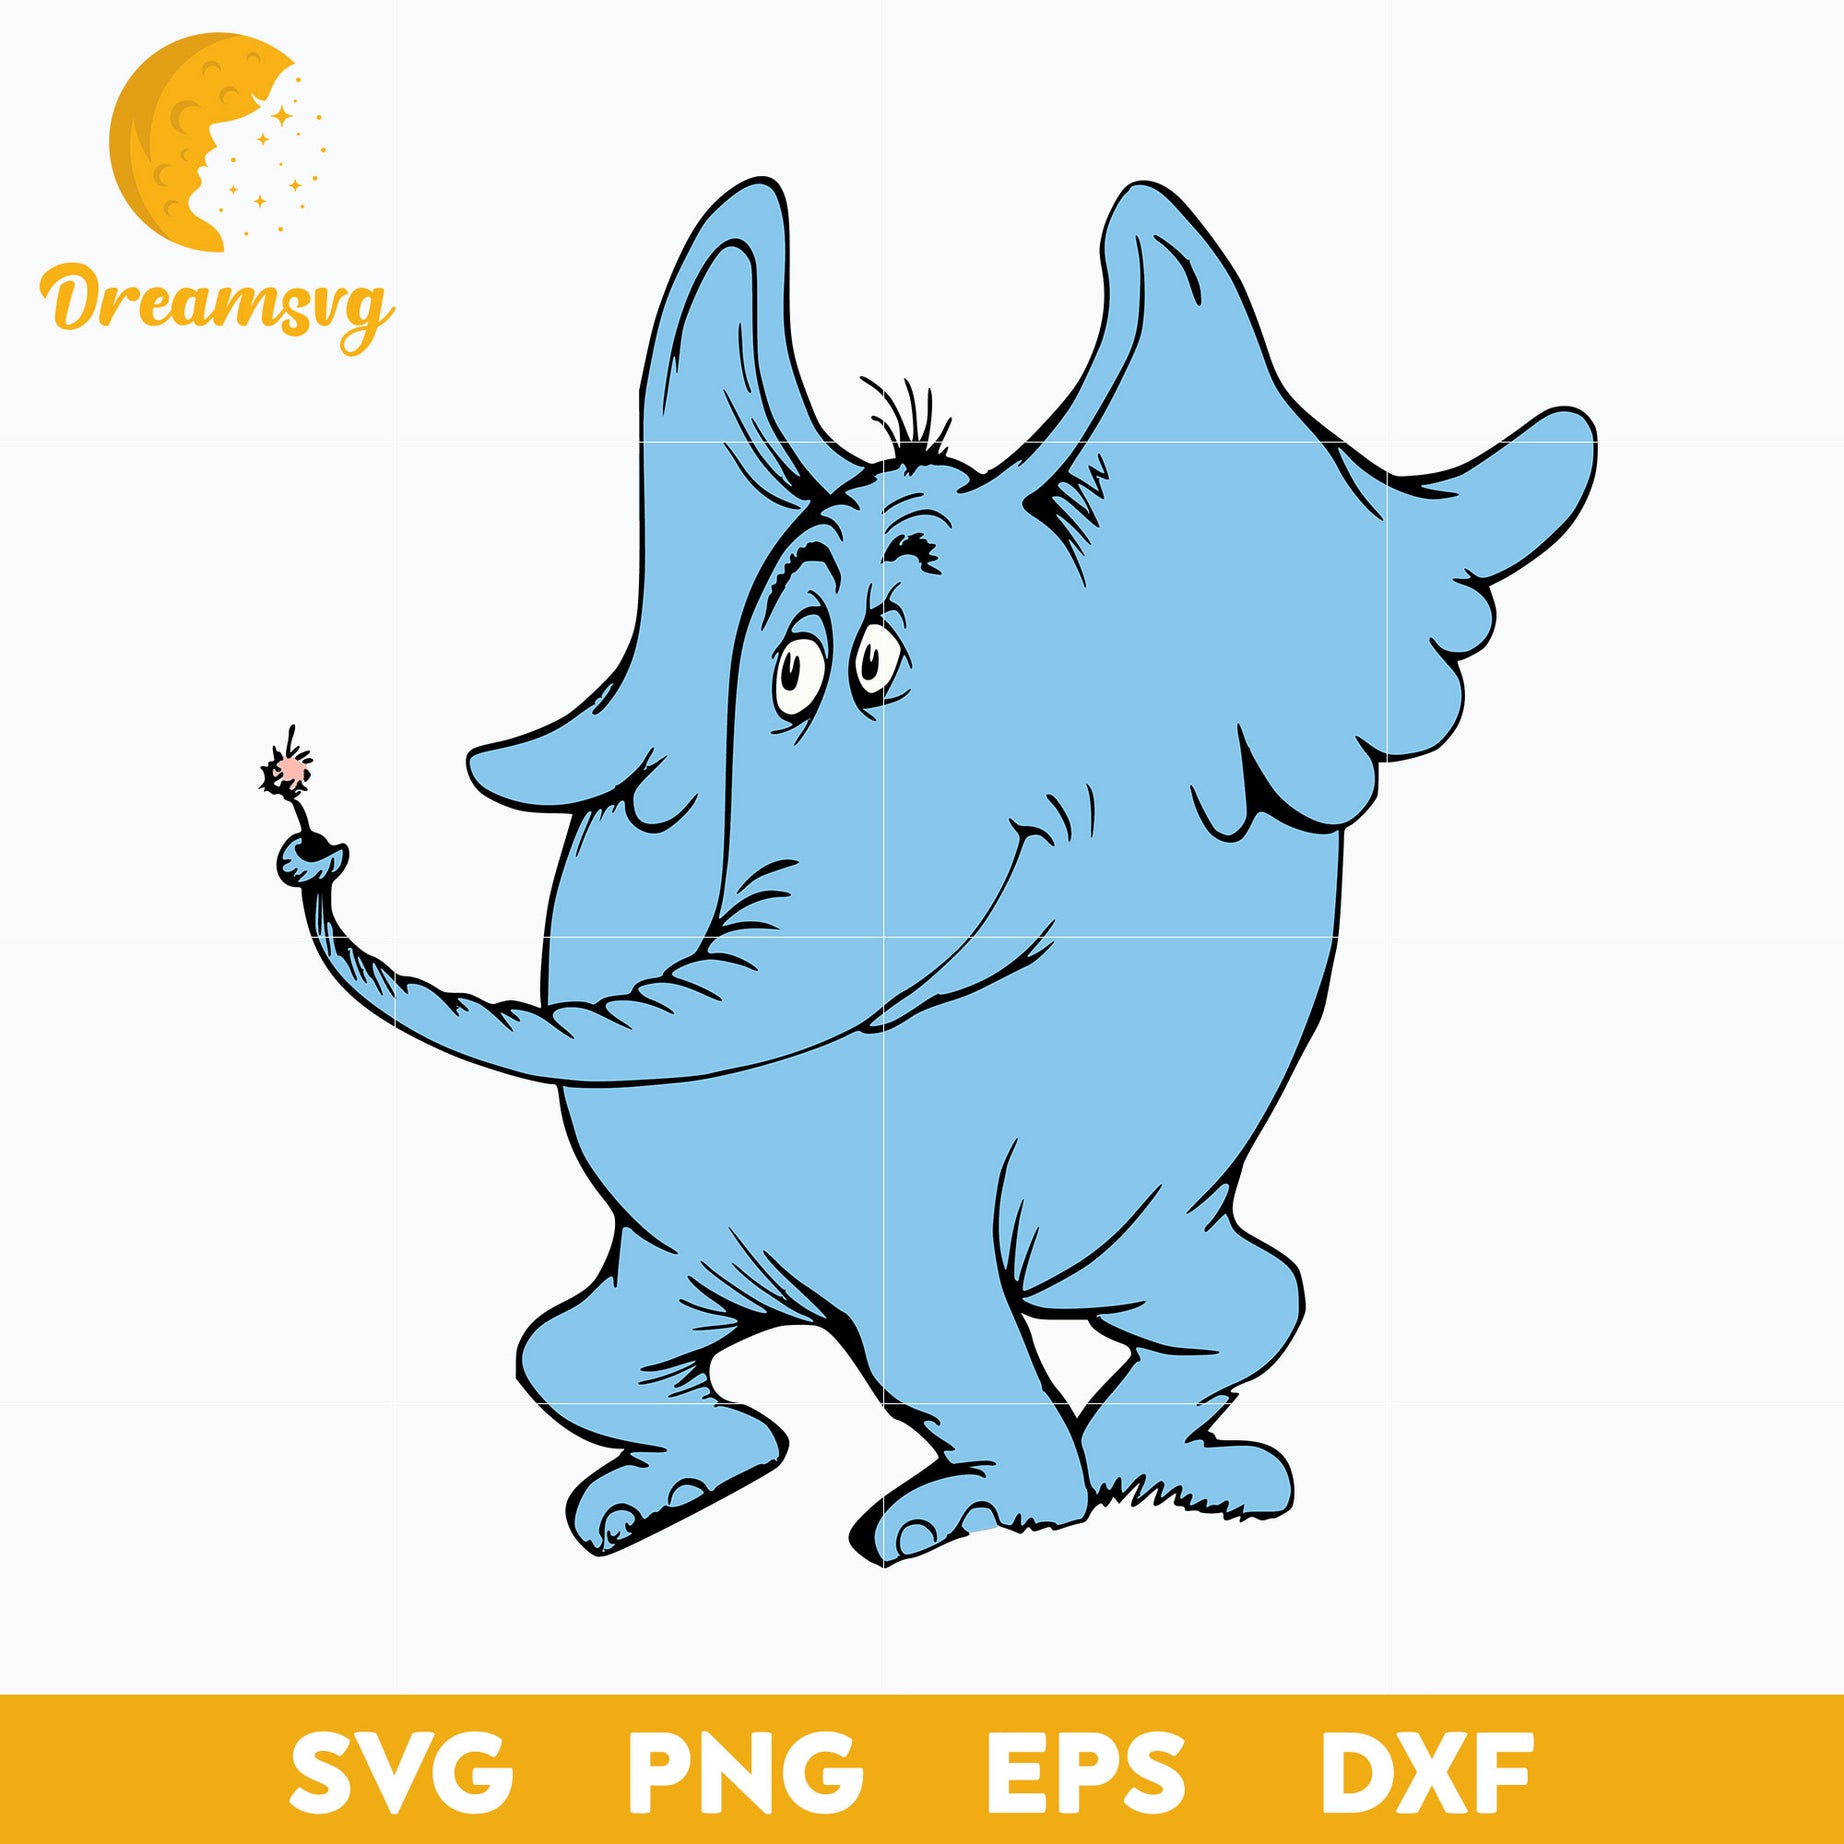 Dr Seuss Horton SVG, PNG DXF EPS File